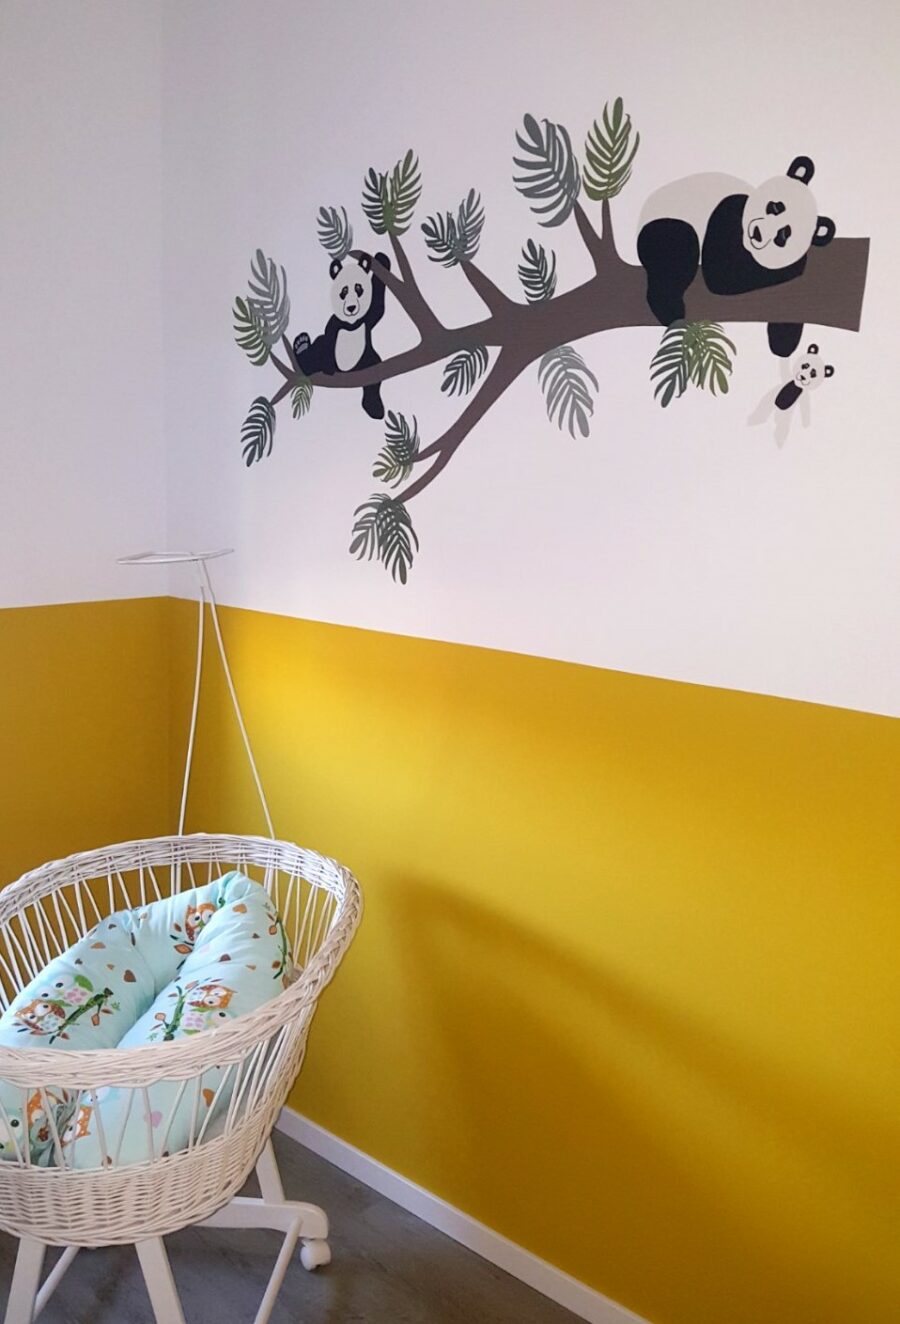 Behangdecoratie pandabeer pandatak babykamer behang jungle muursticker behangsticker vliesbehang babykamerinrichting